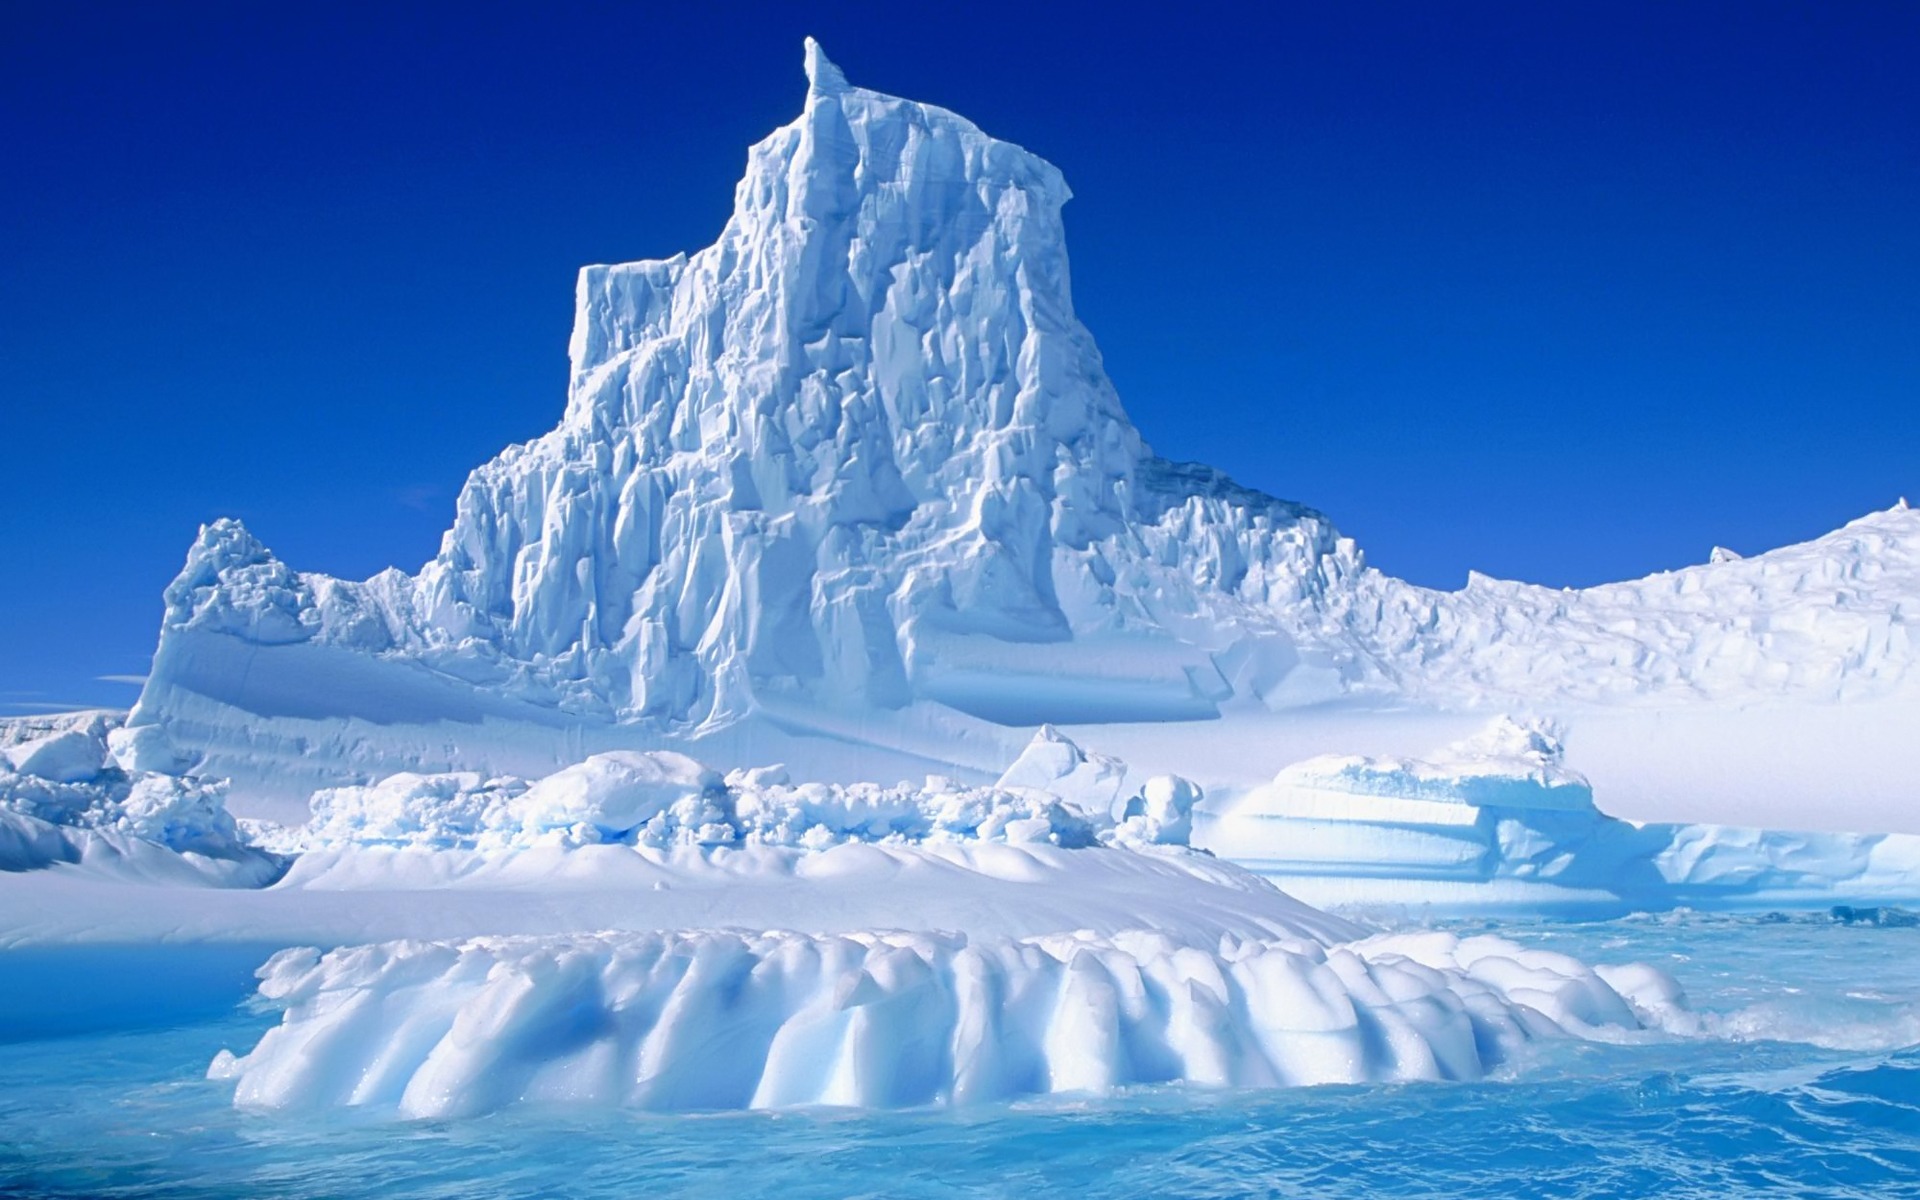 Iceberg_1920_x_1200_widescreen.jpg